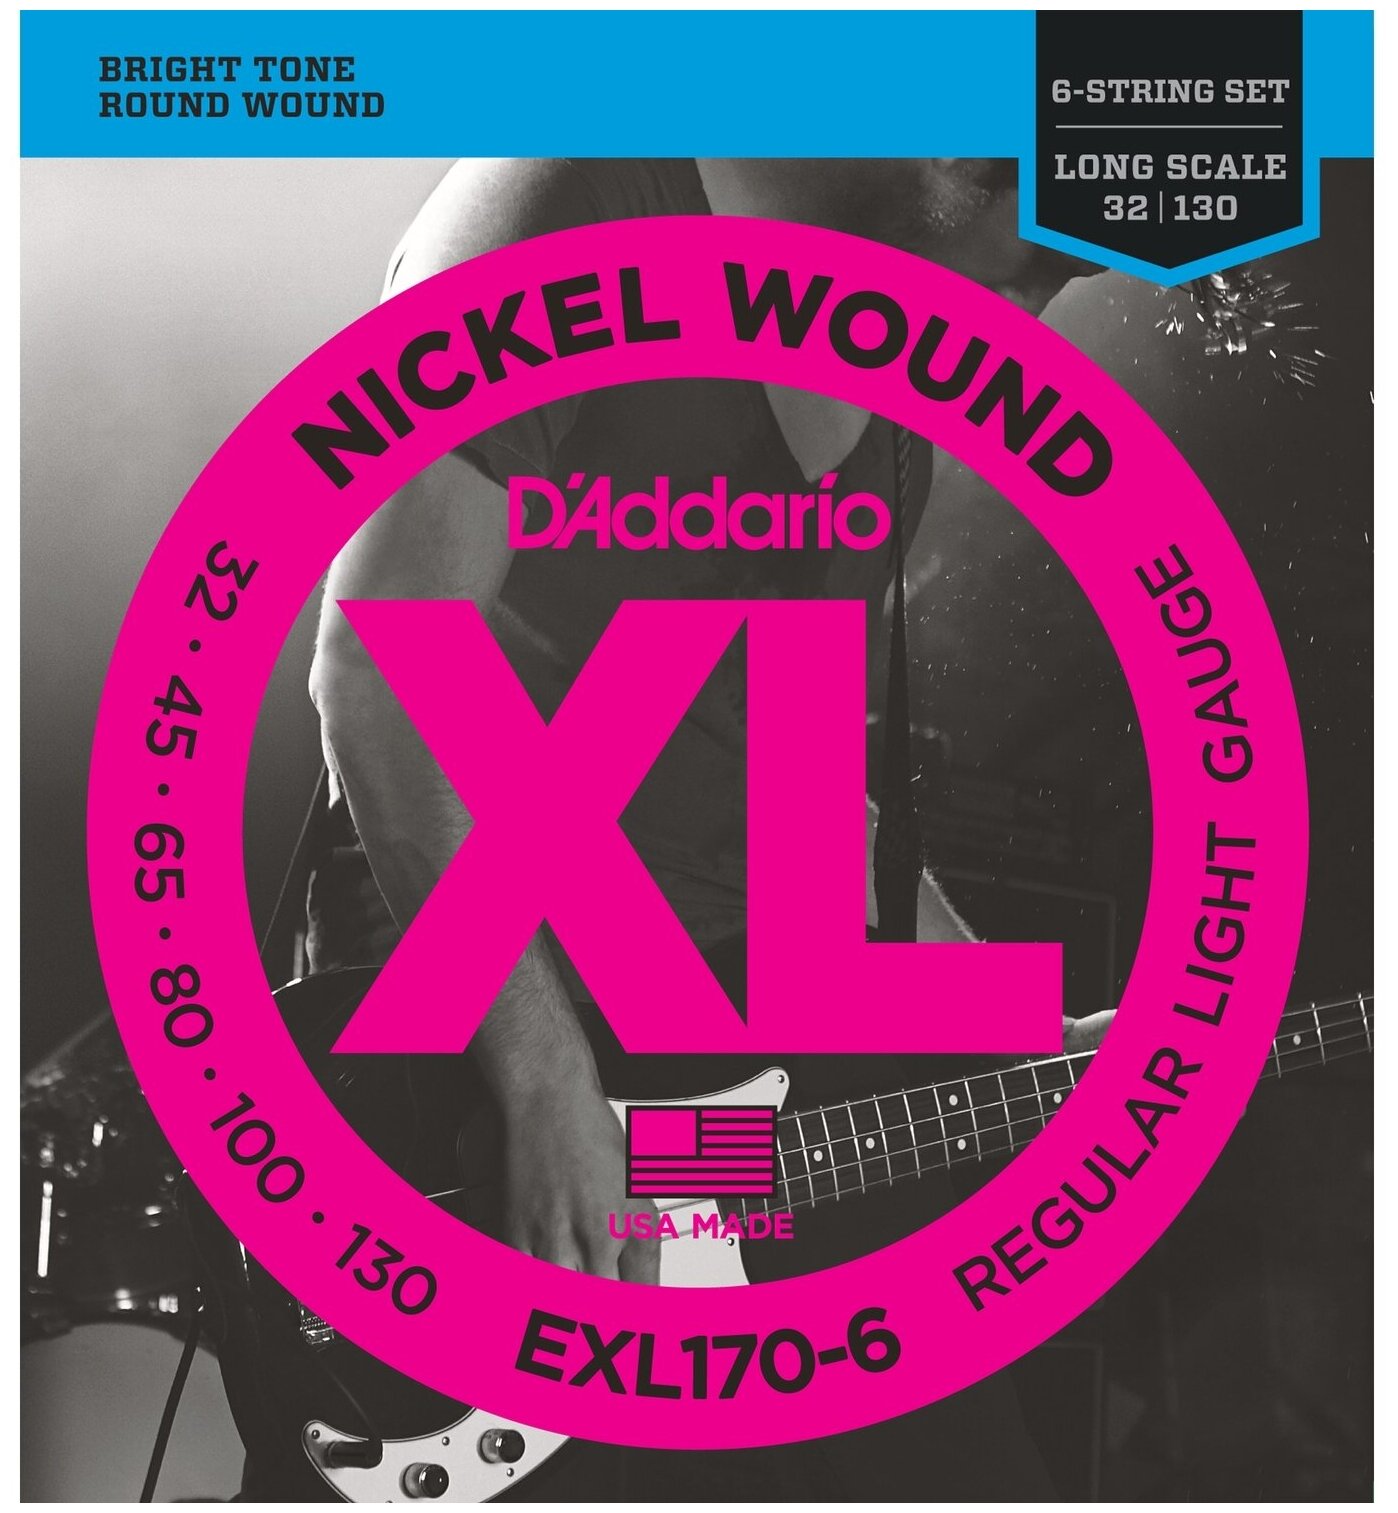 D'Addario EXL170-6 Струны для 6-стр. бас-гит, soft long 032-130